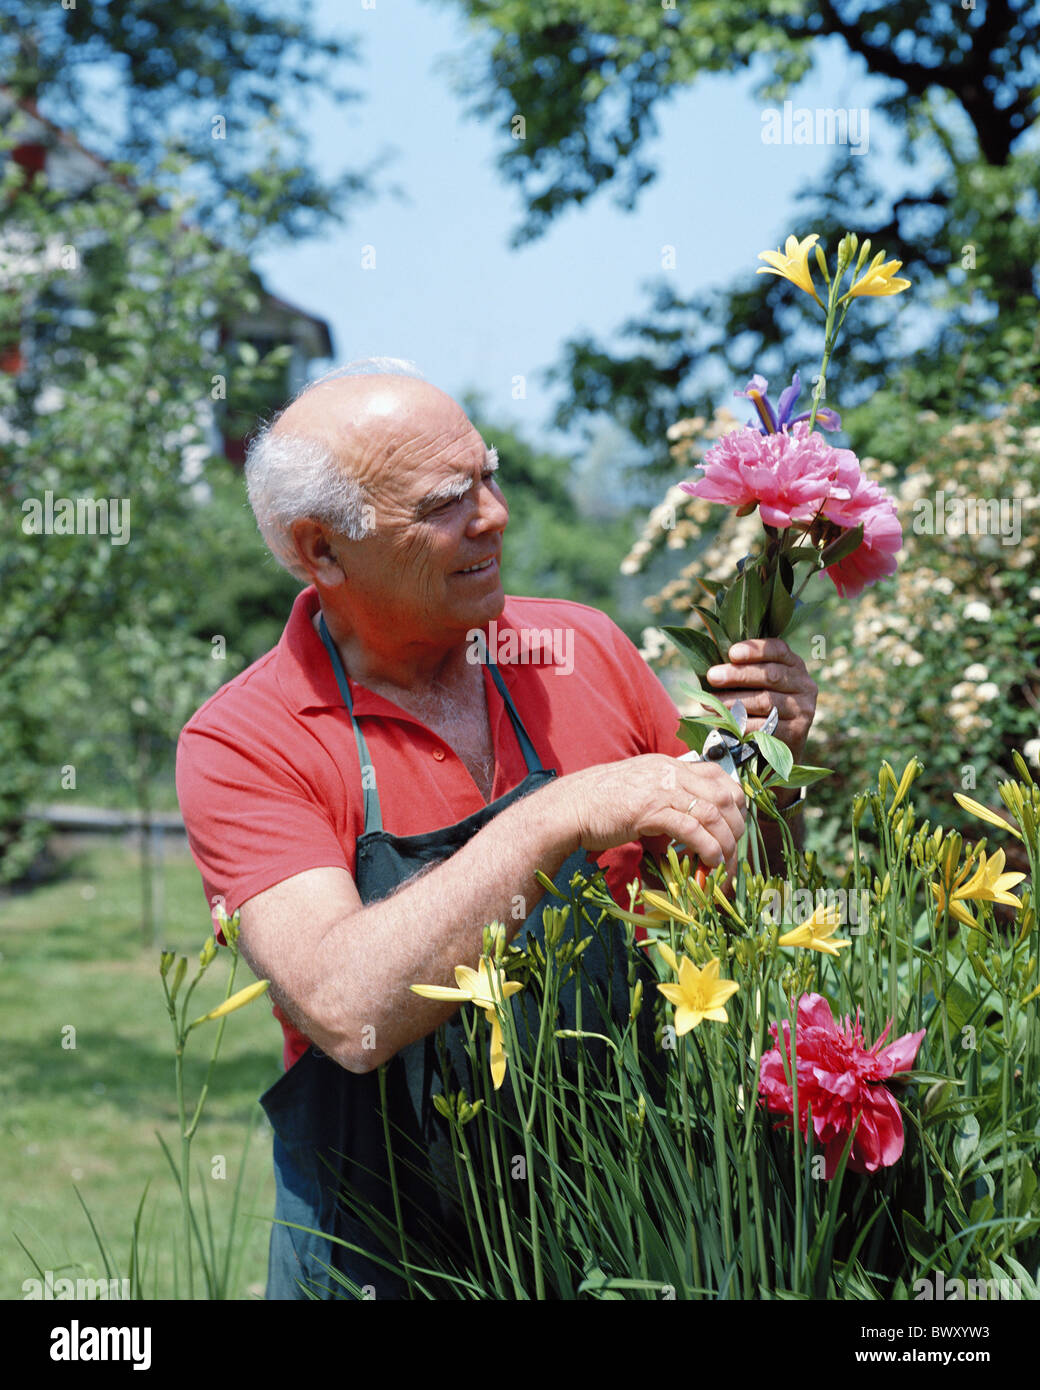 Ropa de trabajo flores jardín jardinero aficionado hombre senior citizen Foto de stock